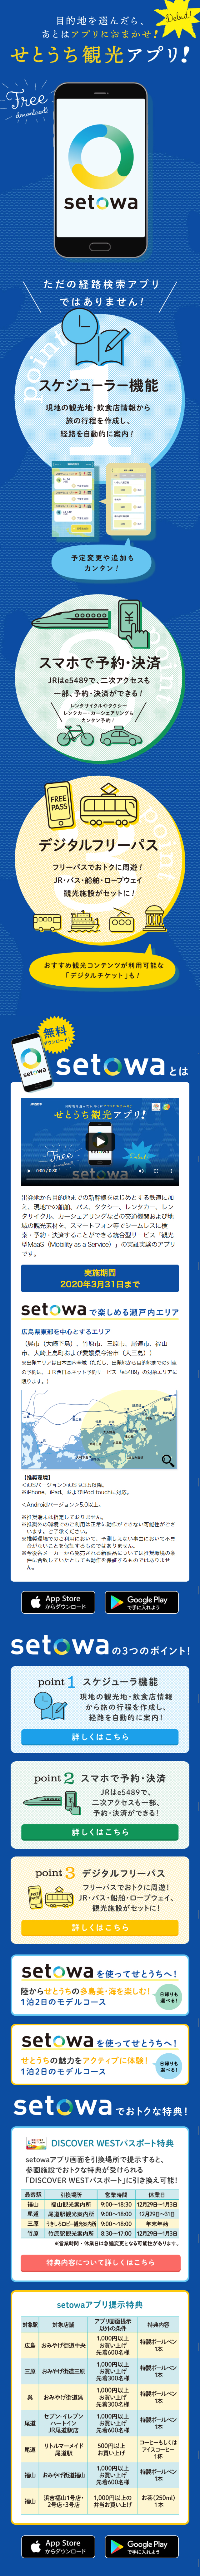 せとうち観光アプリ「setowa」_sp_1